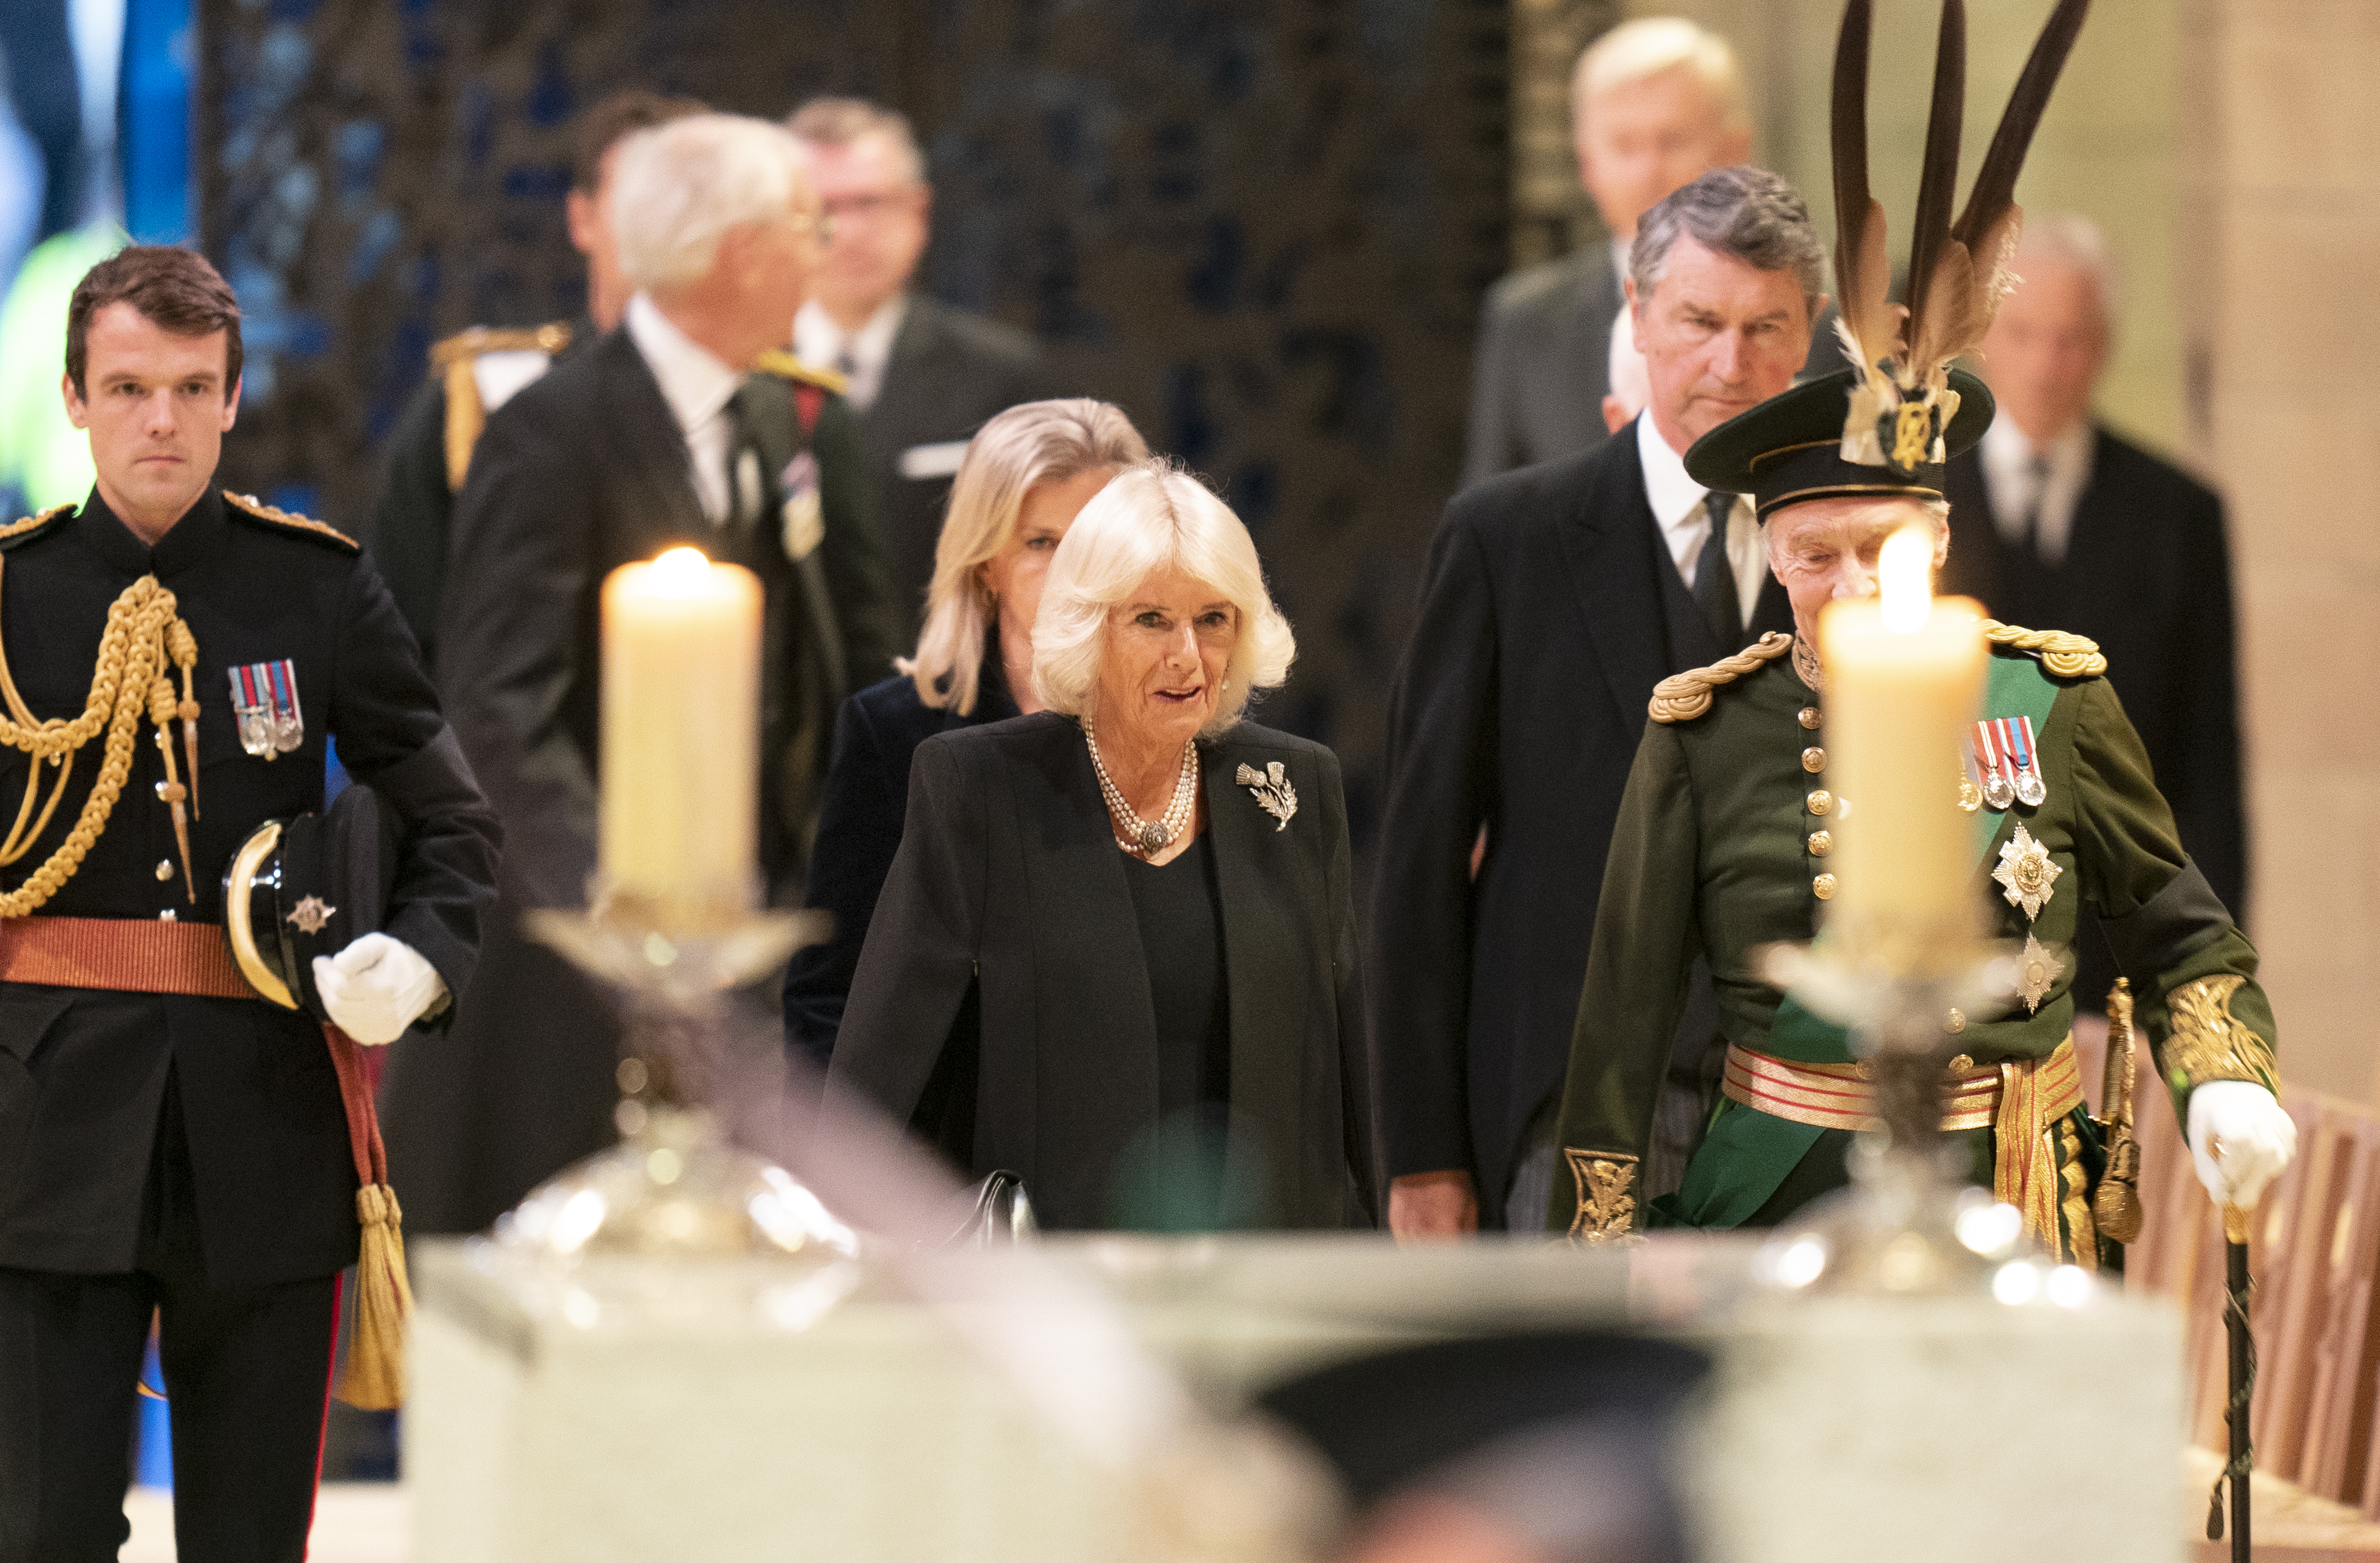 Camilla Parker Bowles, a nova rainha consorte, presta homenagem discreta a Rainha Elizabeth II durante velório 3